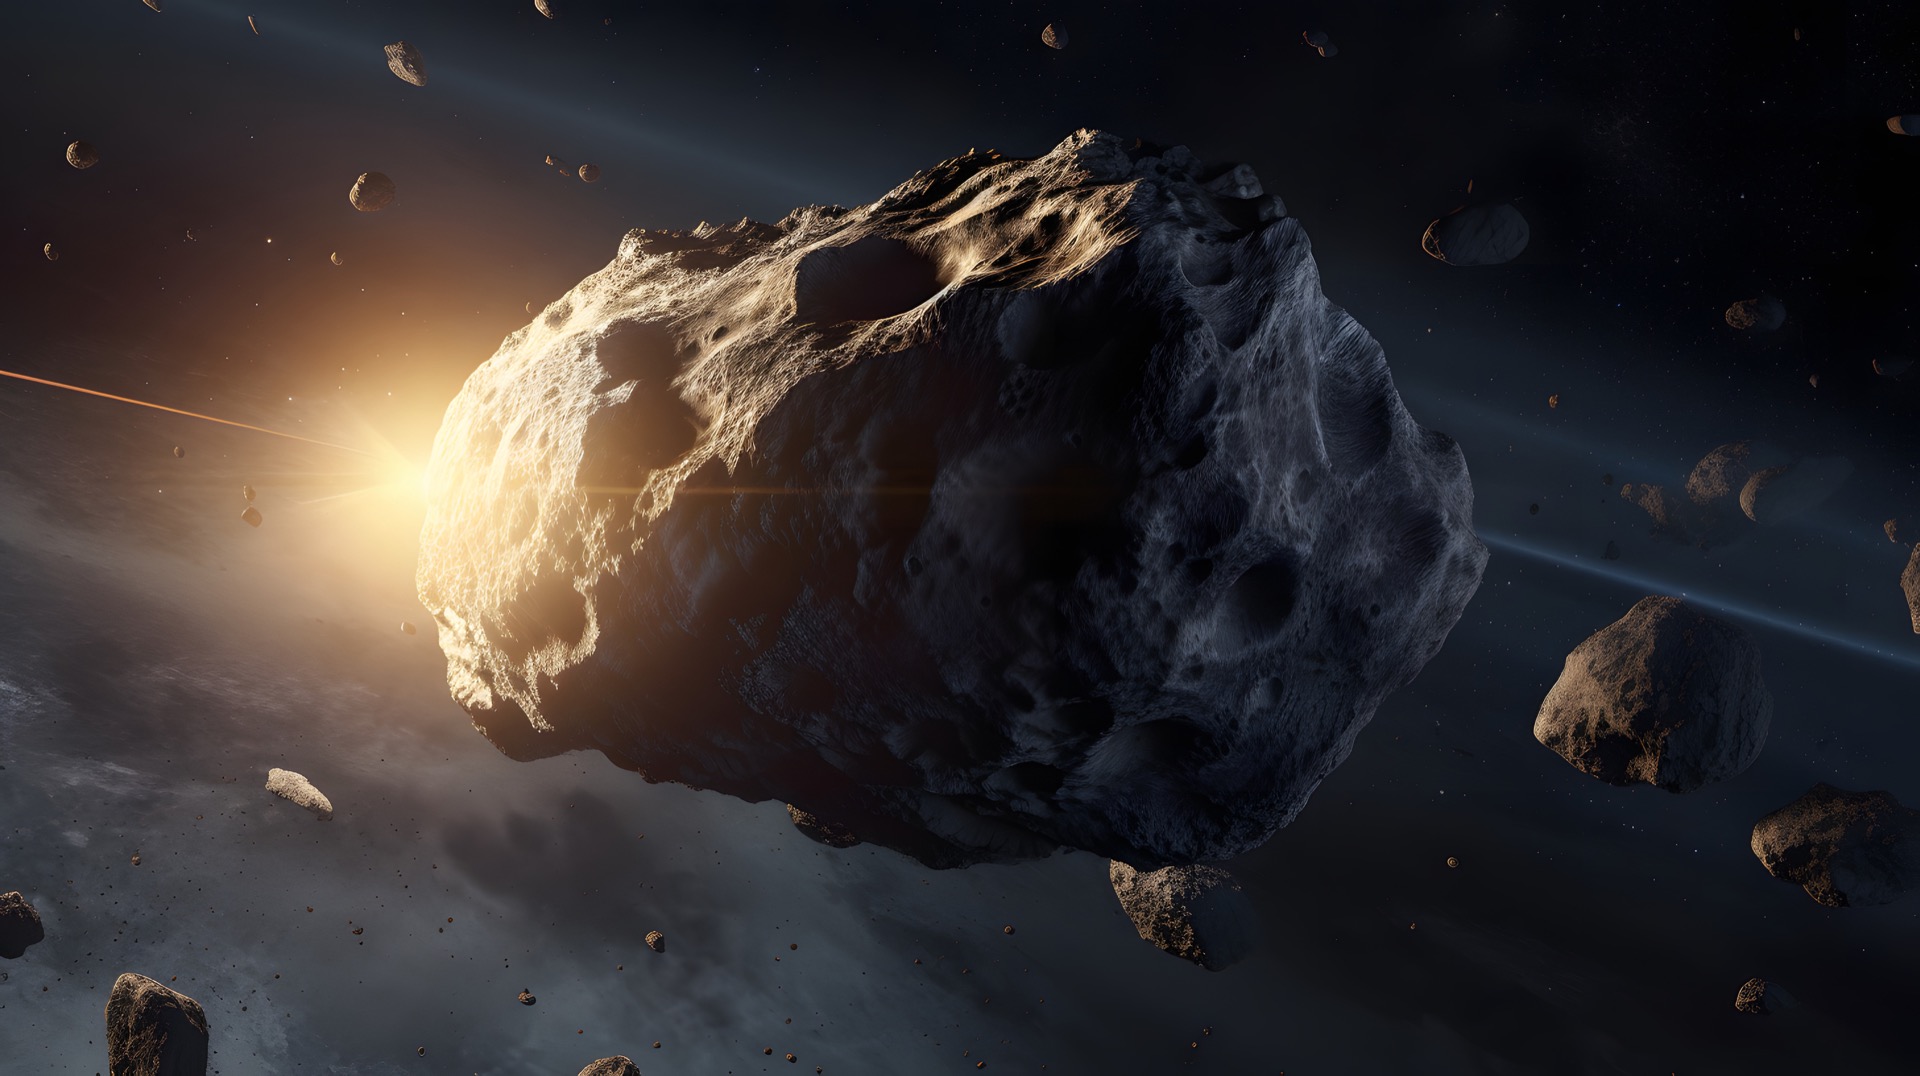 33 Polyhymnia est un astéroïde dont la densité ne peut être expliquée par les éléments chimiques connus à ce jour. © Stphane, Adobe Stock